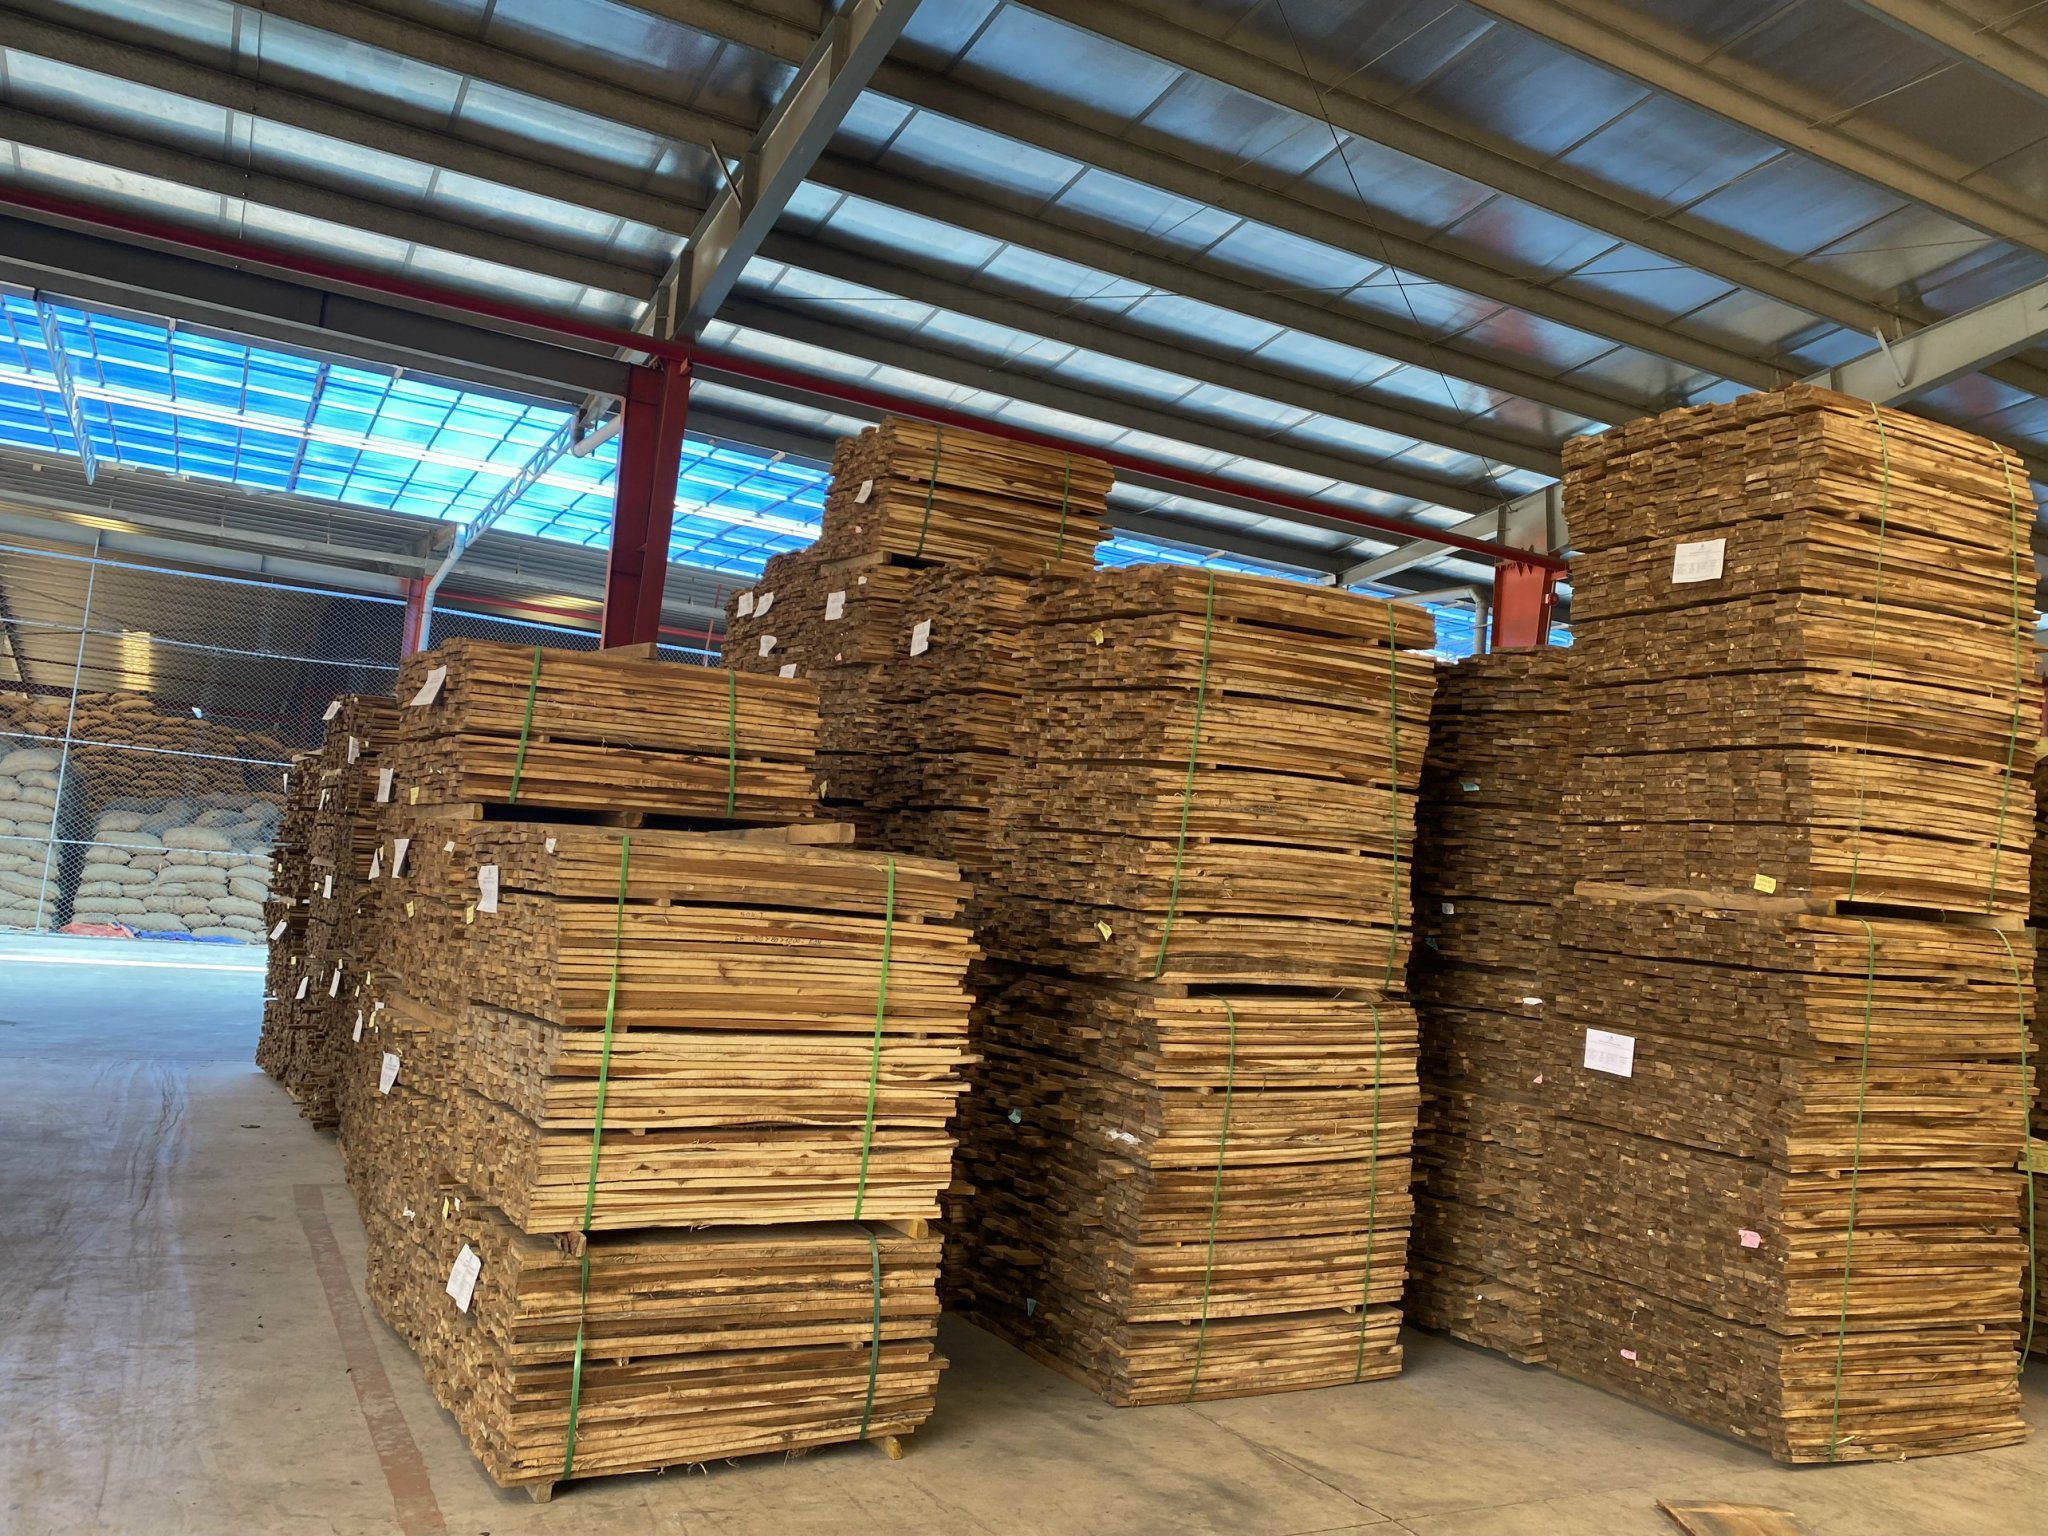 Cần tìm đơn vị vận tải vận chuyển mặt hàng gỗ keo xẻ đi Trung Quốc 